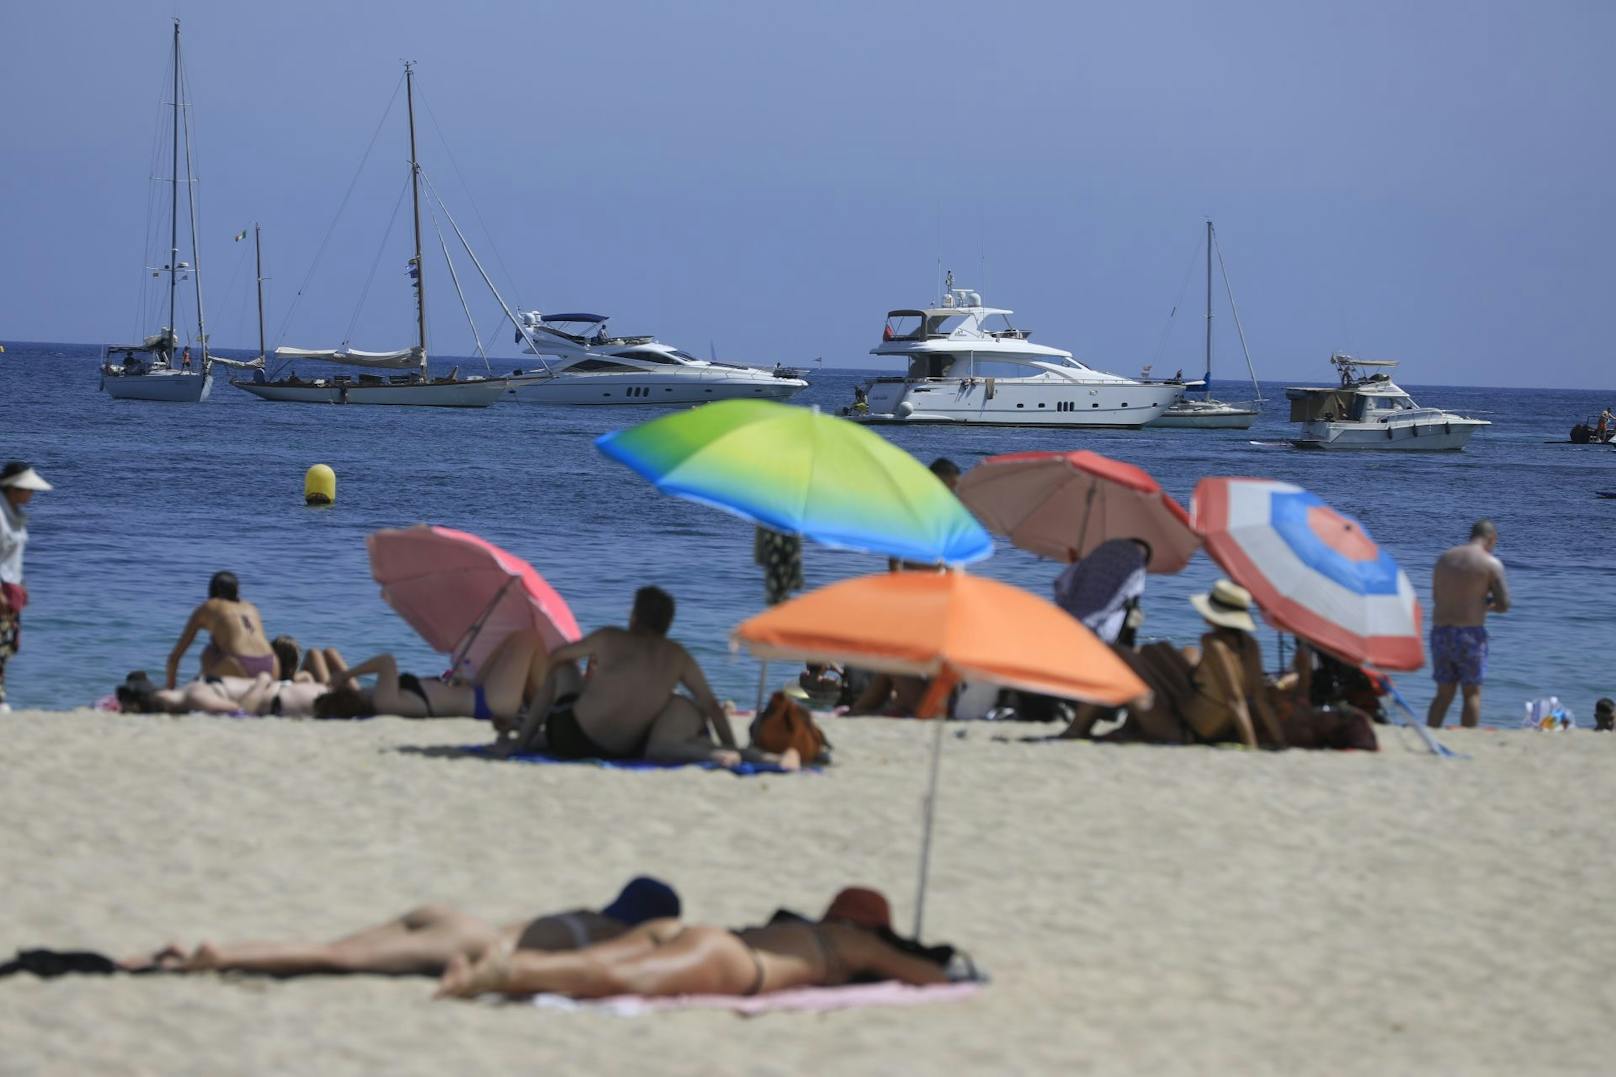 Hohes Touristen-Aufkommen auf Mallorca führte jetzt dazu, dass der Wasserverbrauch eingeschränkt wird. (Symbolbild)